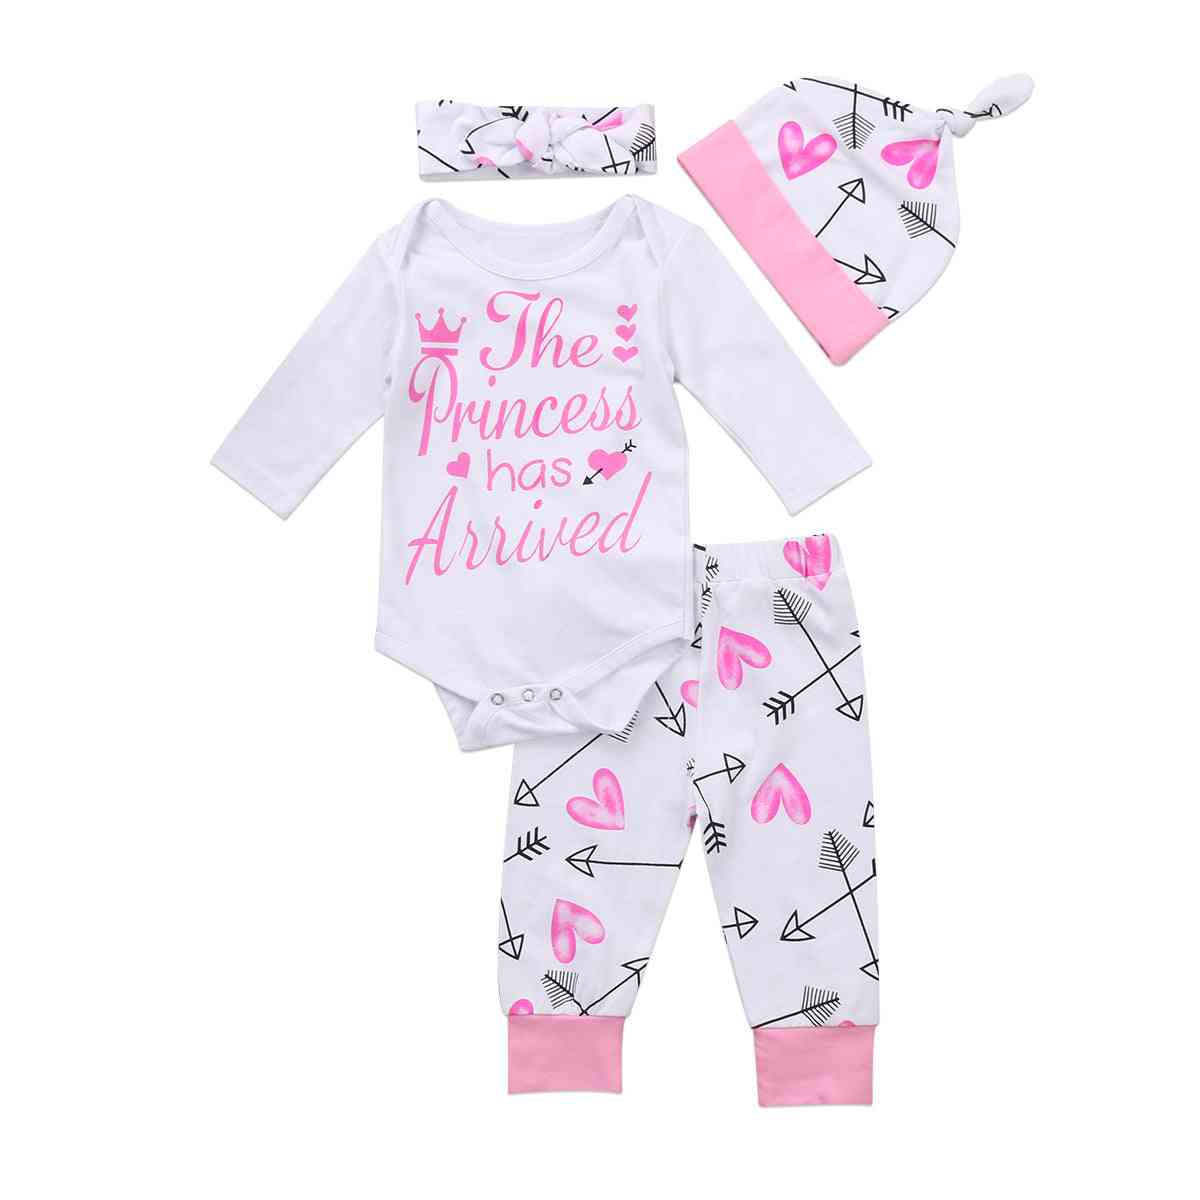 Pasgeboren baby schattige comfortabele zachte baby meisjes kleding playsuit broek bodysuit outfit set